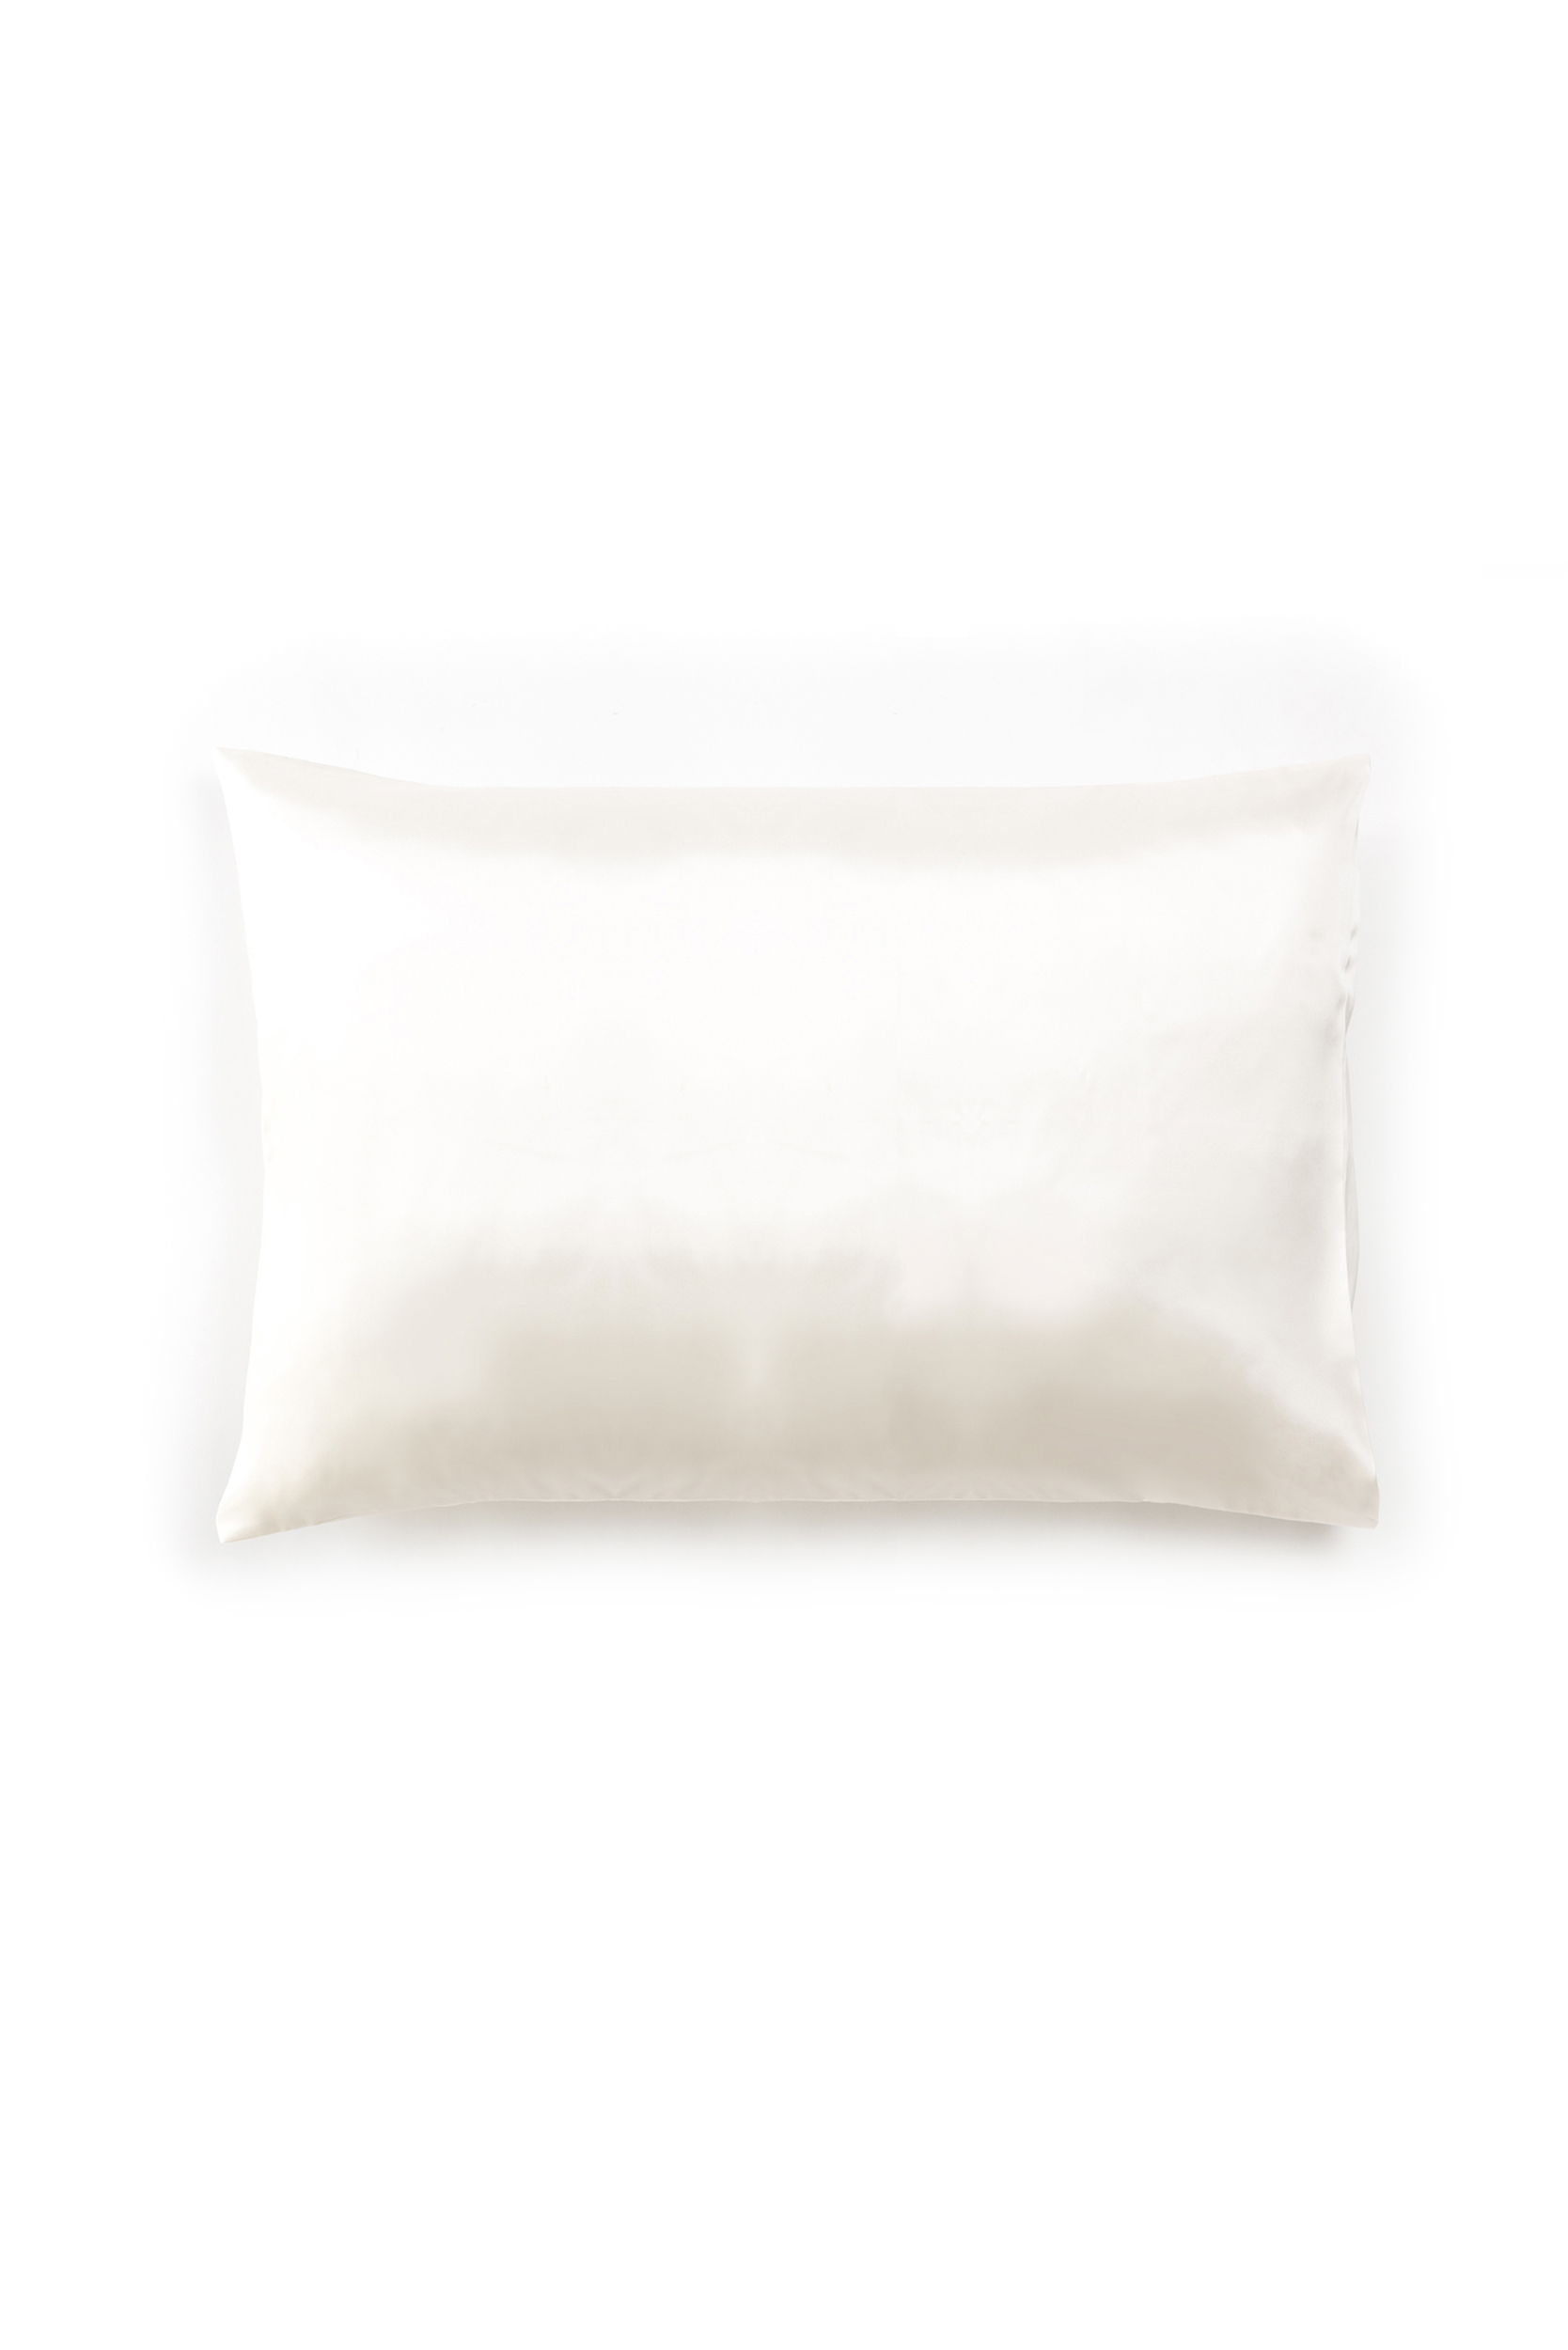 anti-ageing silk pillowcase